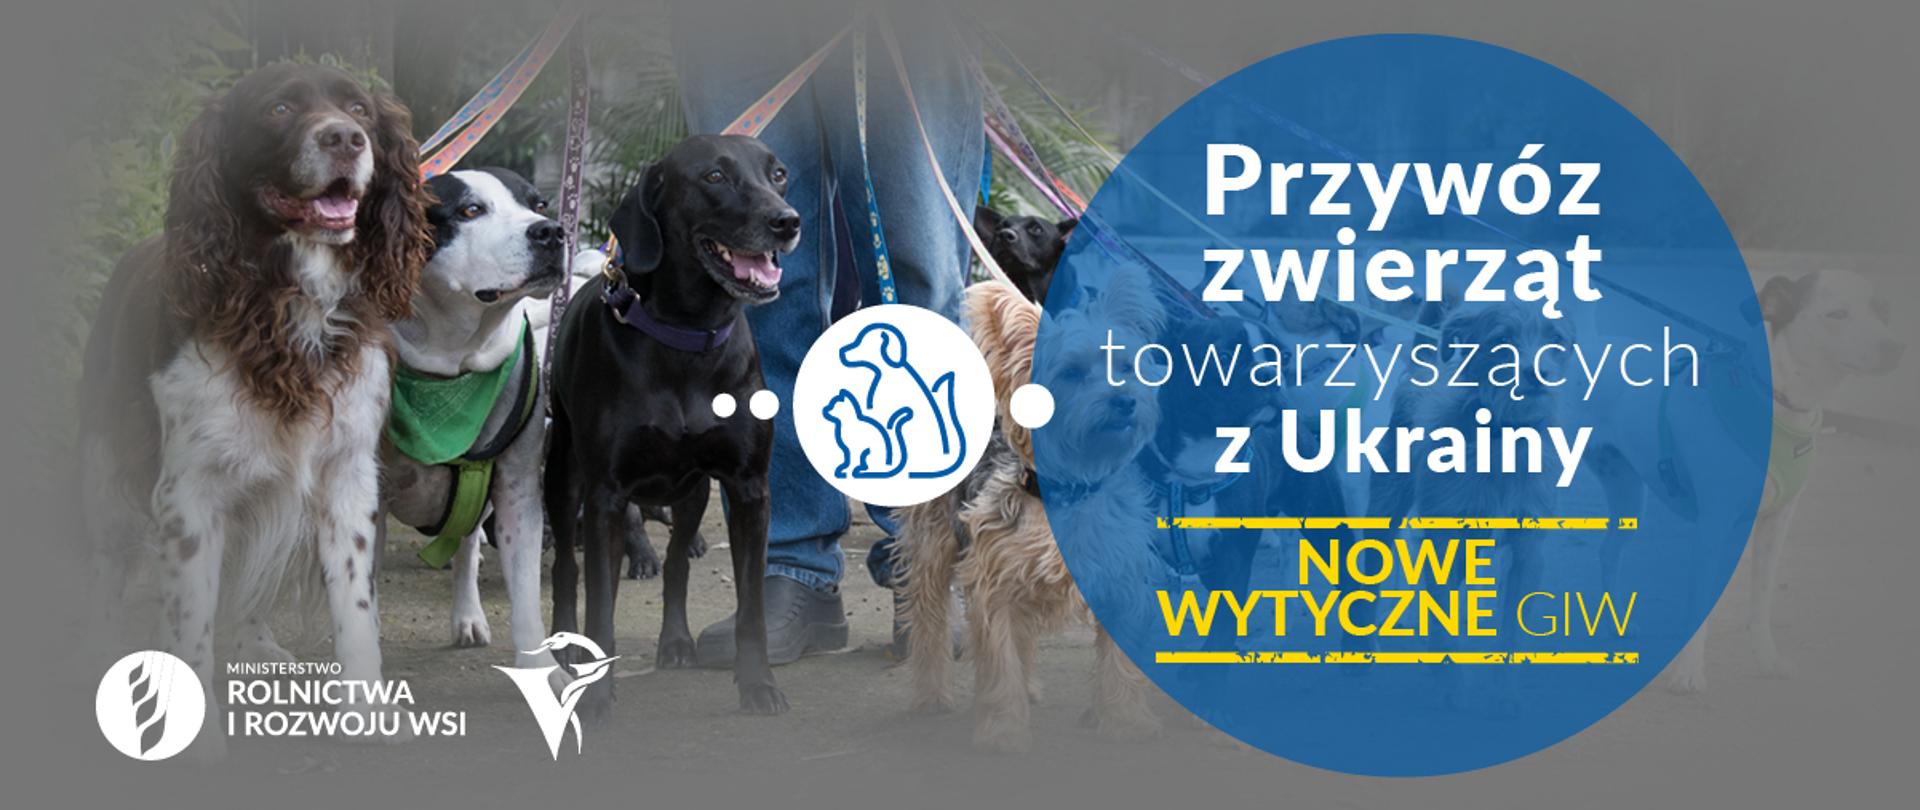 Wytyczne dotyczące przywozu z Ukrainy powyżej 5 psów/kotów/fretek niespełniających wymagań unijnych